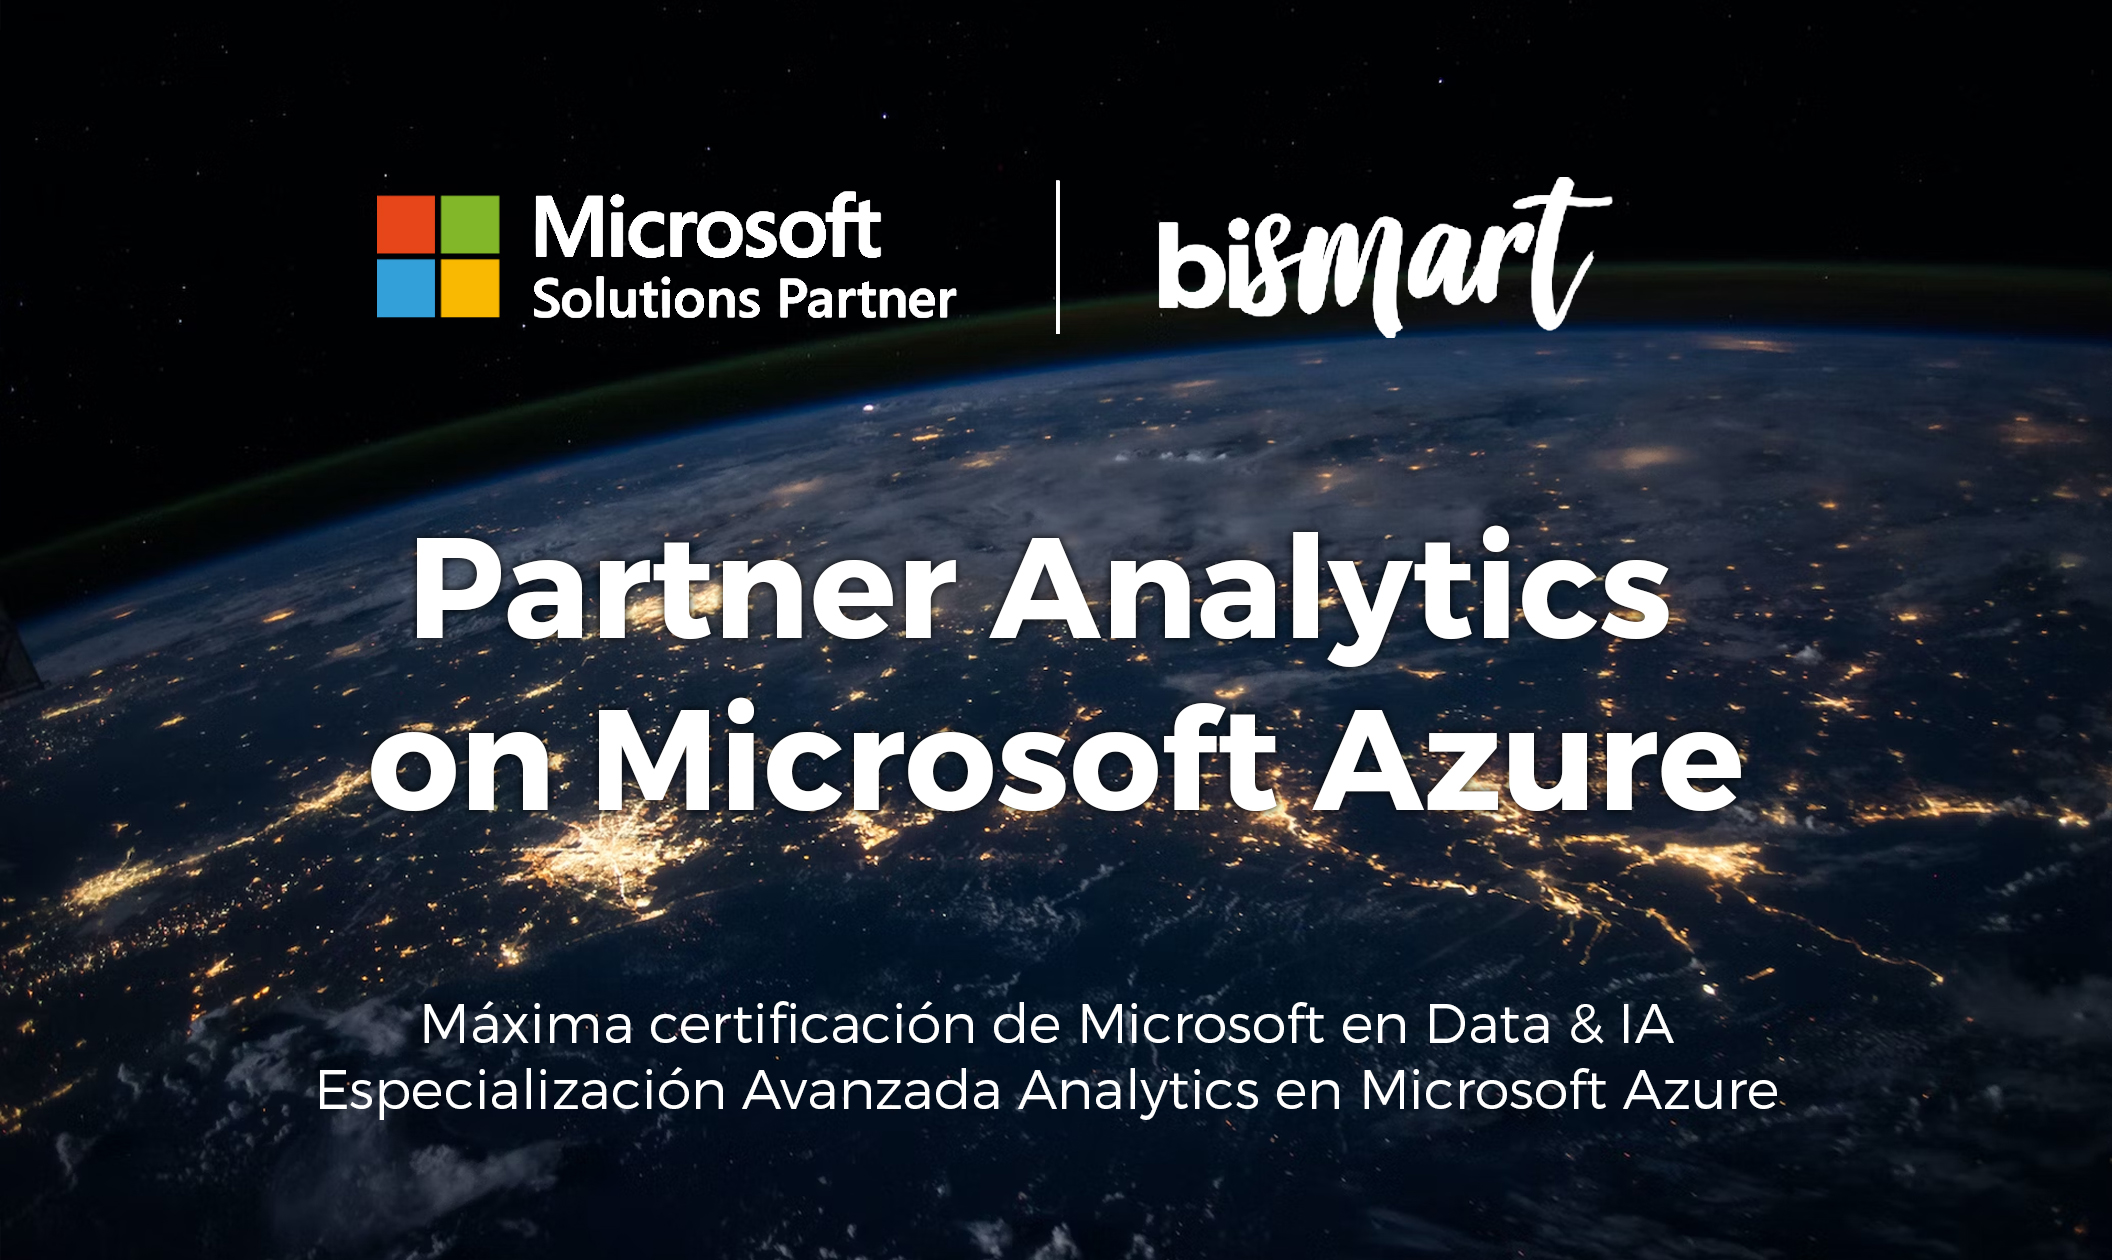 Bismart es partner analytics on Microsoft Azure